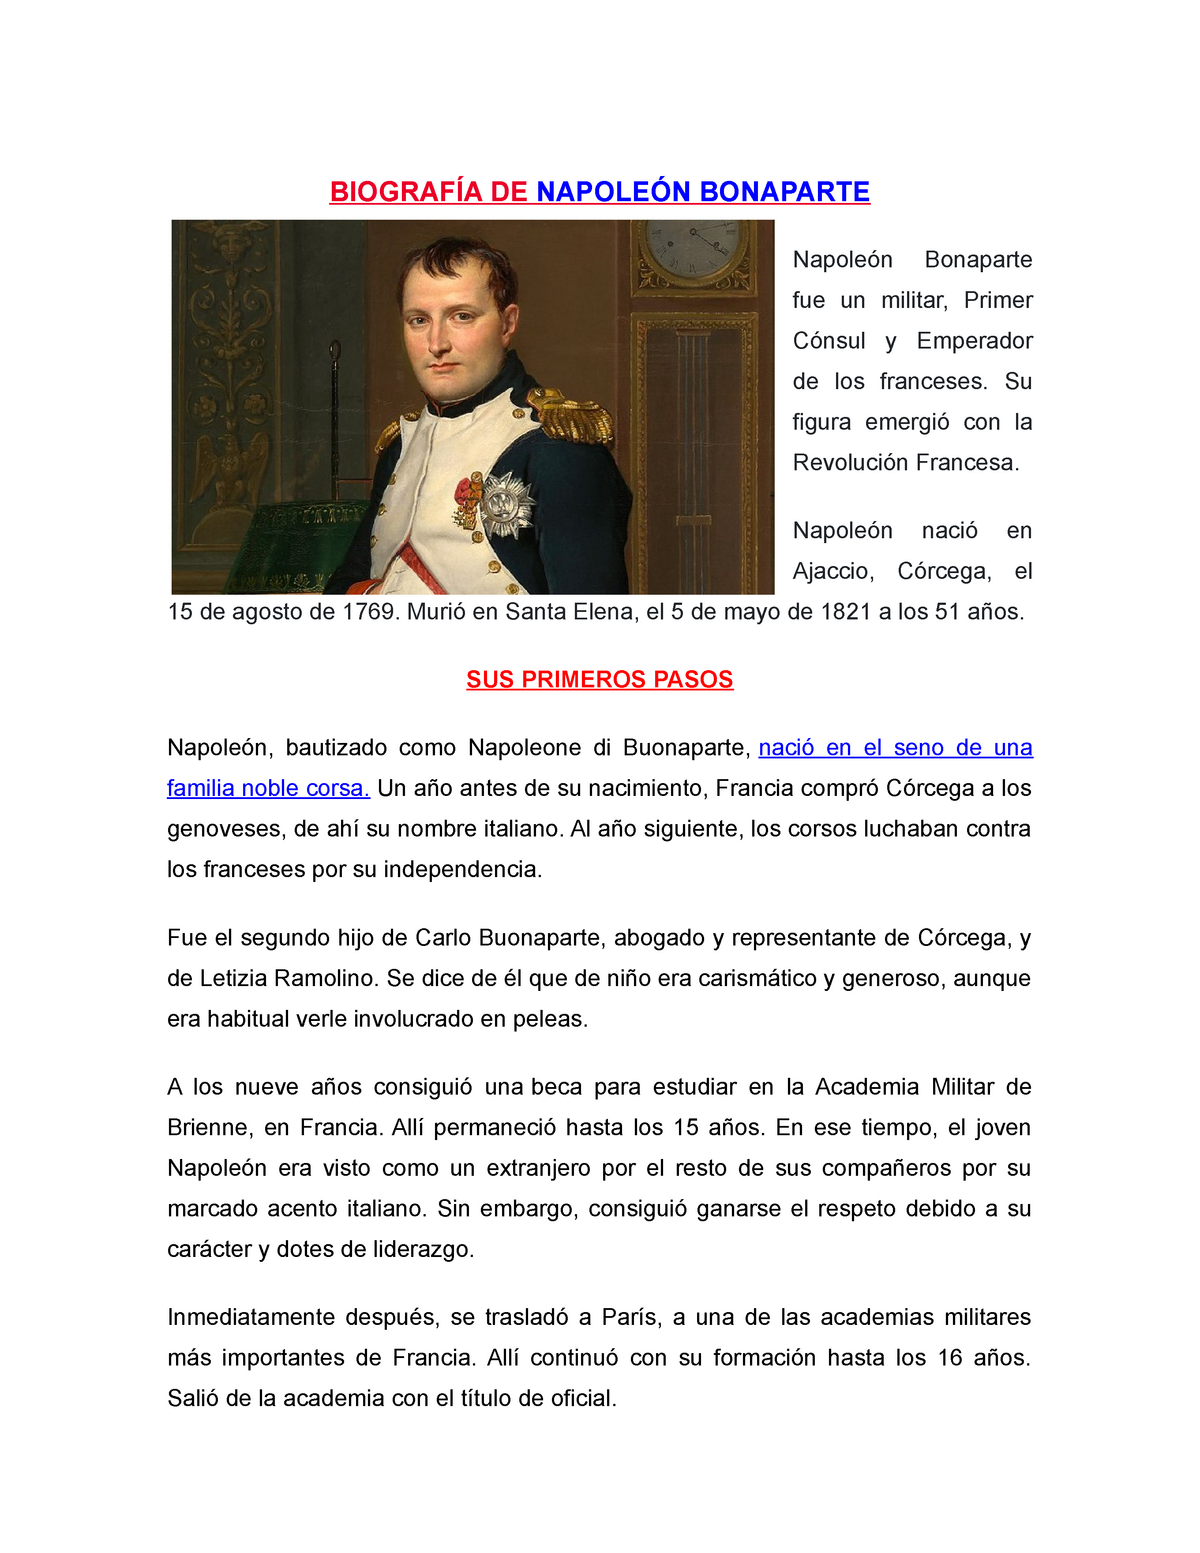 napoleon bonaparte biography essay